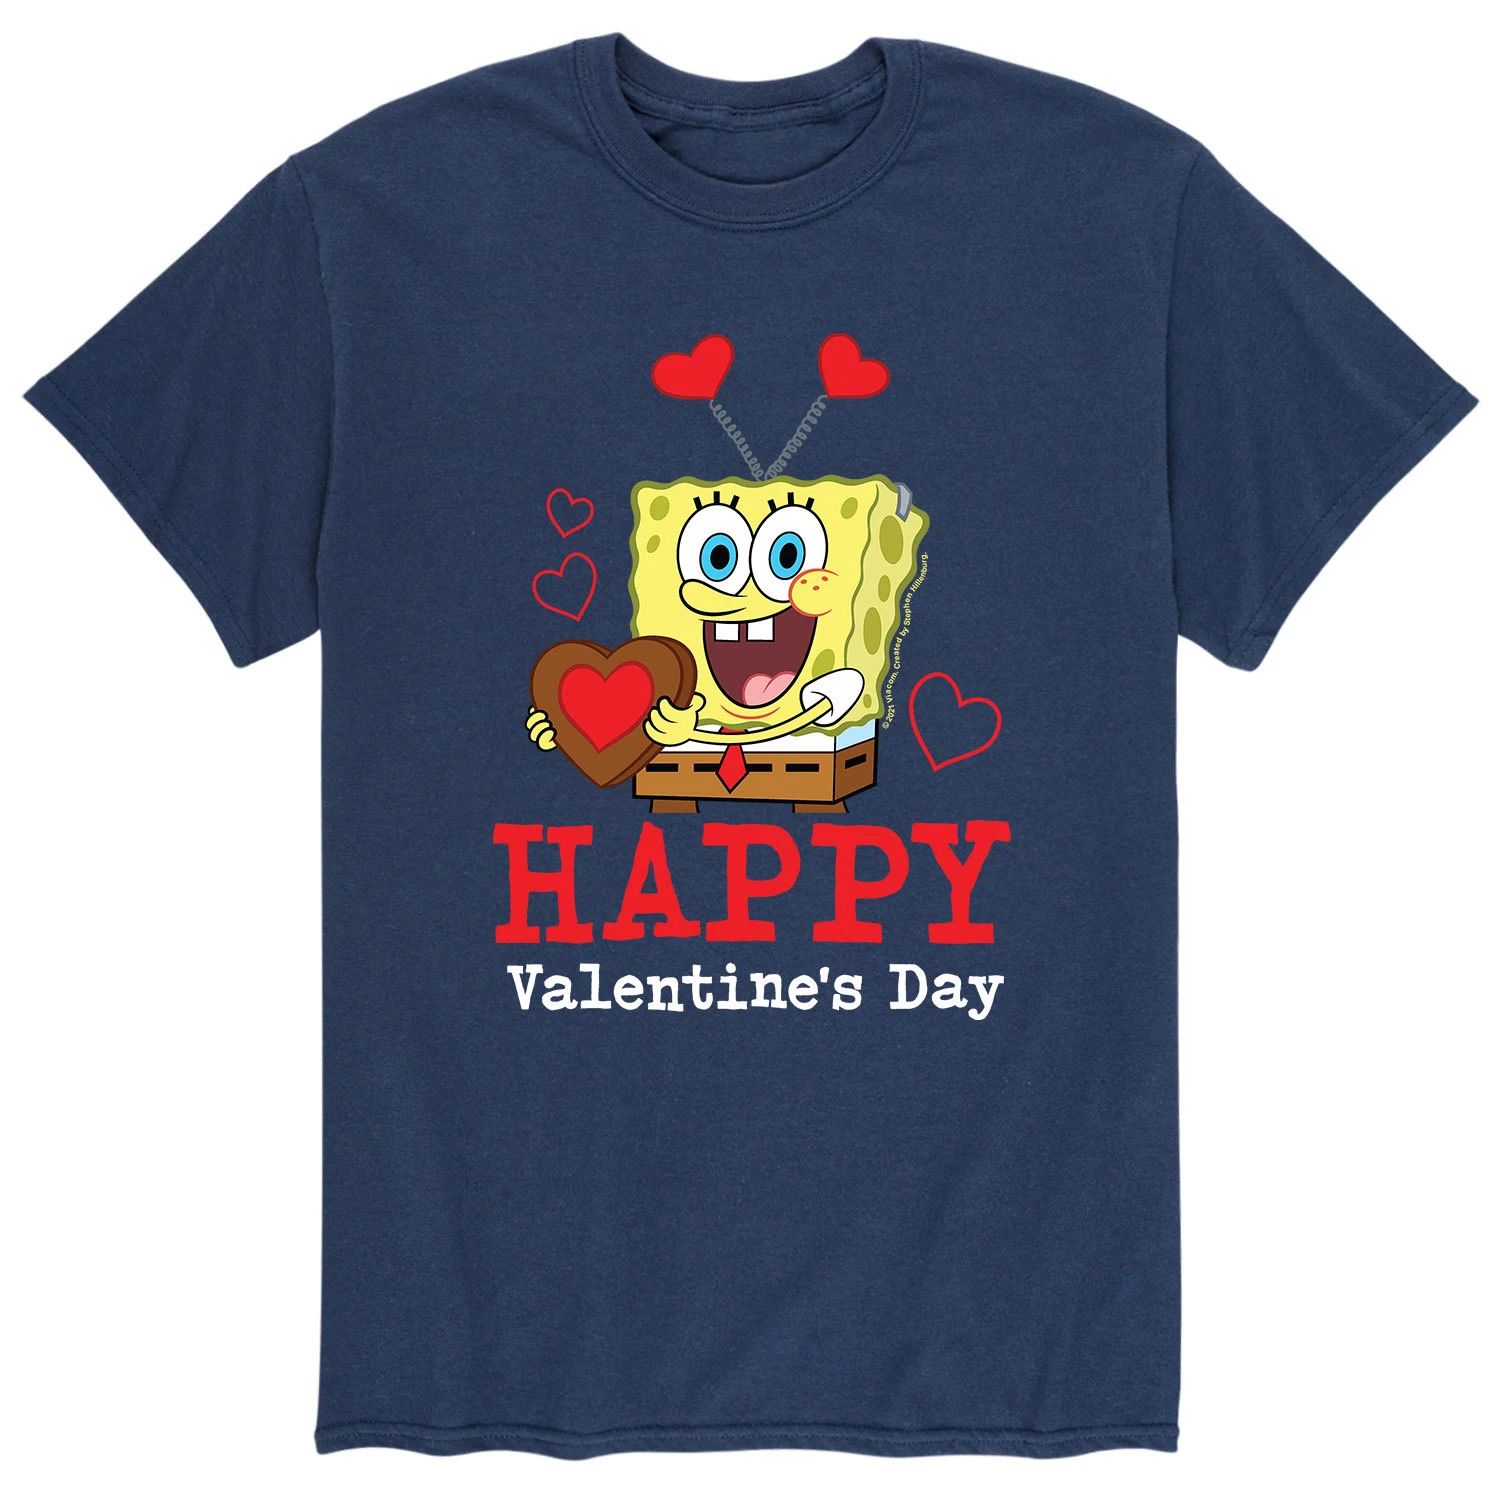 Мужская футболка с изображением Губки Боба ко Дню святого Валентина Licensed Character